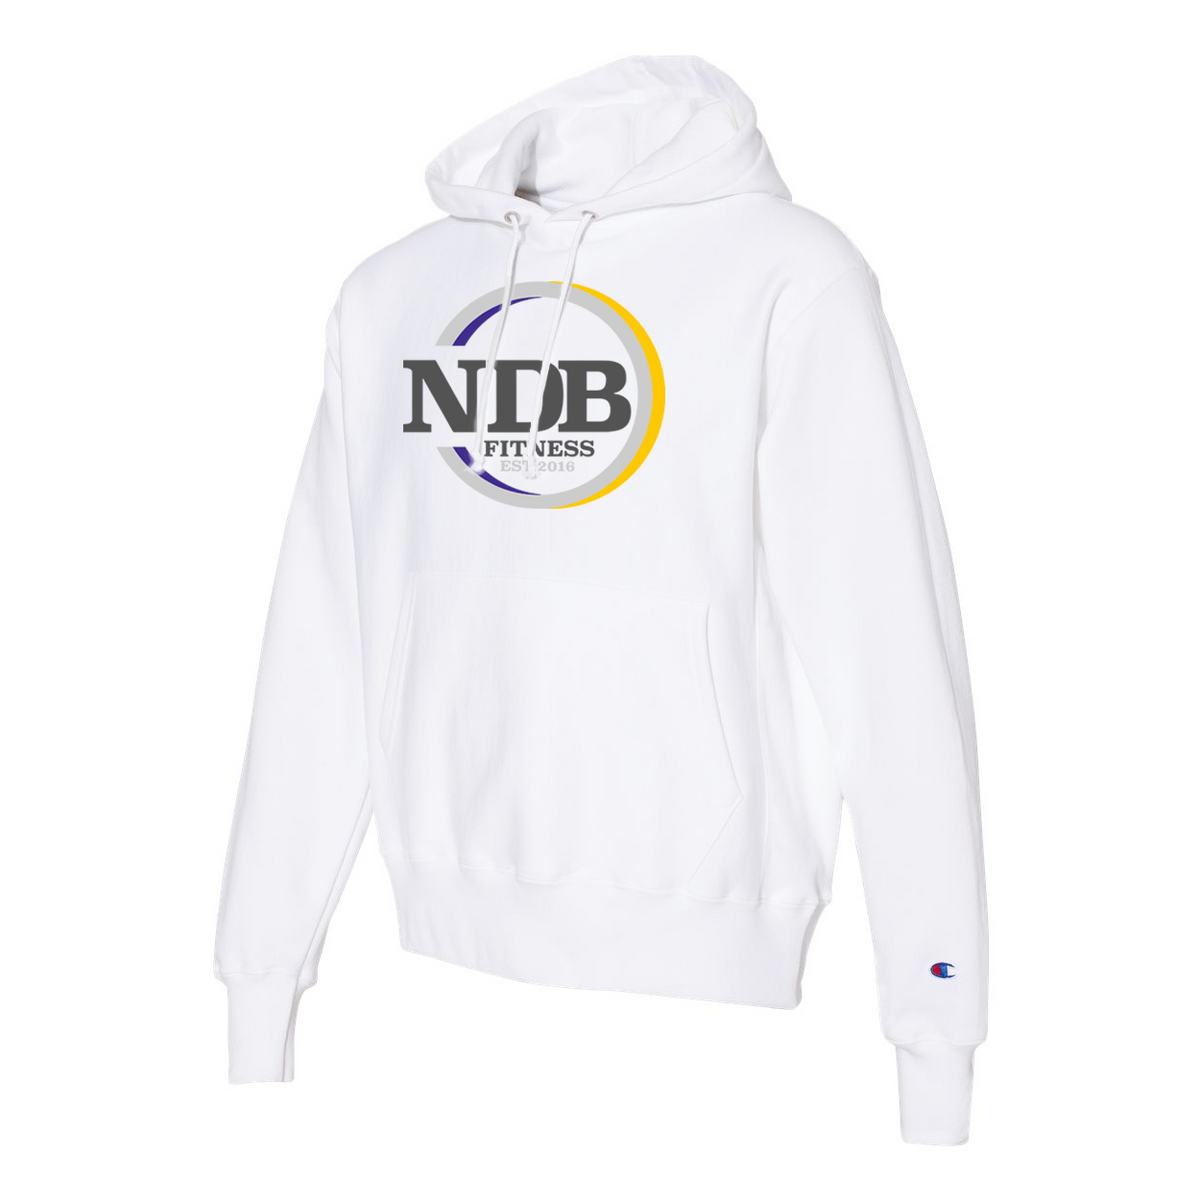 NDB Fitness Champion Double Dry Eco Hooded Sweatshirt